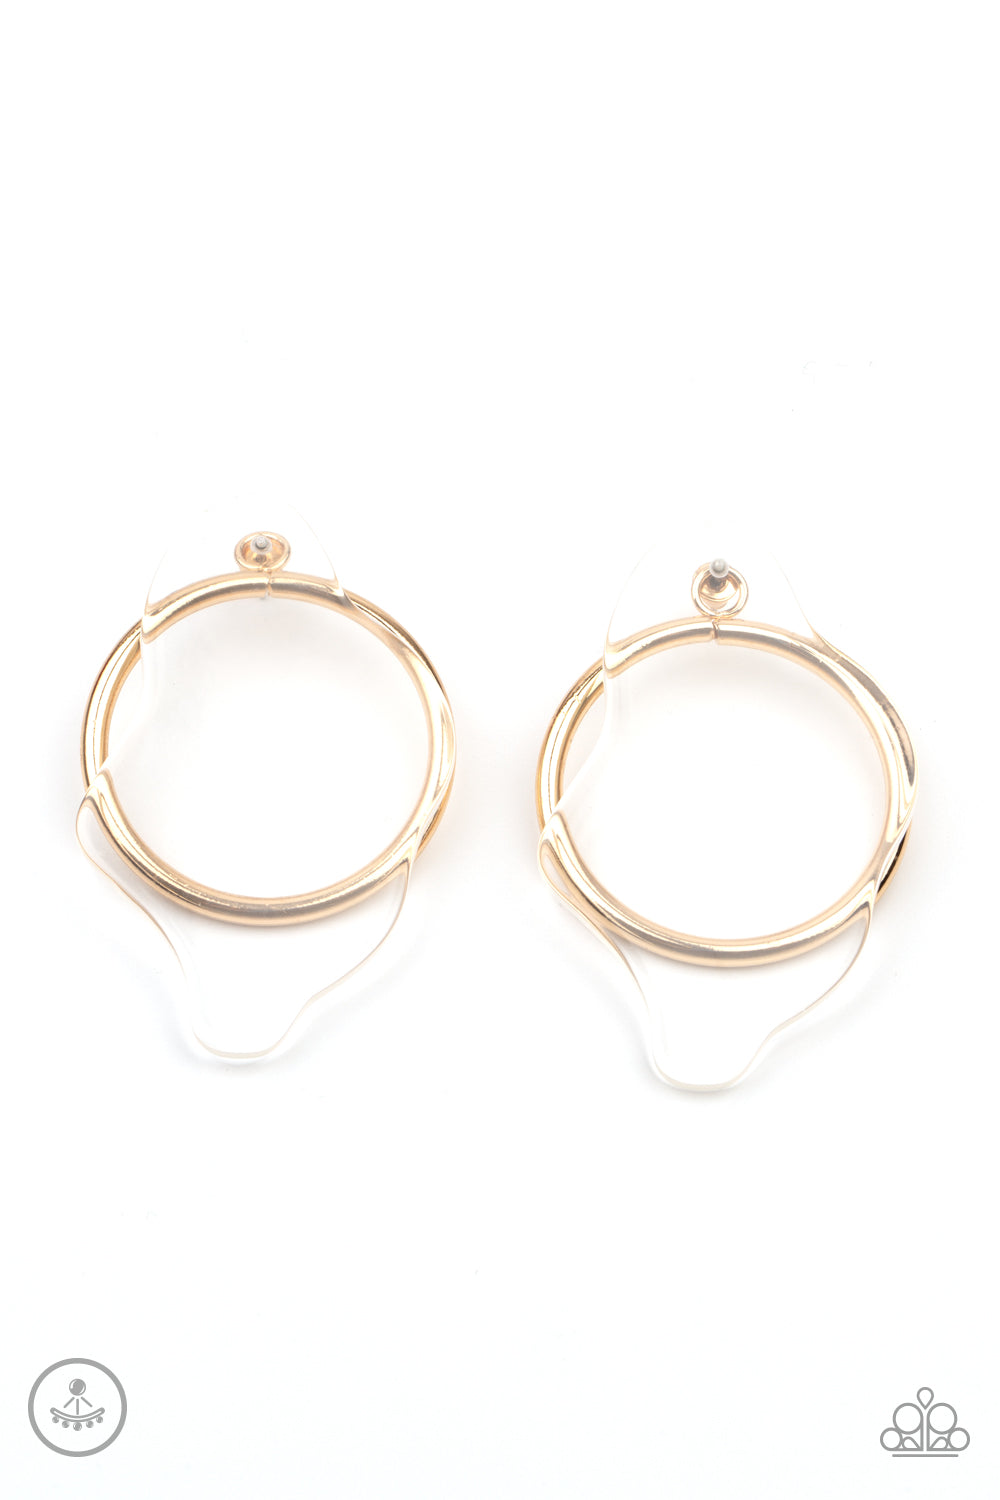 Clear The Way! Gold
Post Earrings - Daria's Blings N Things